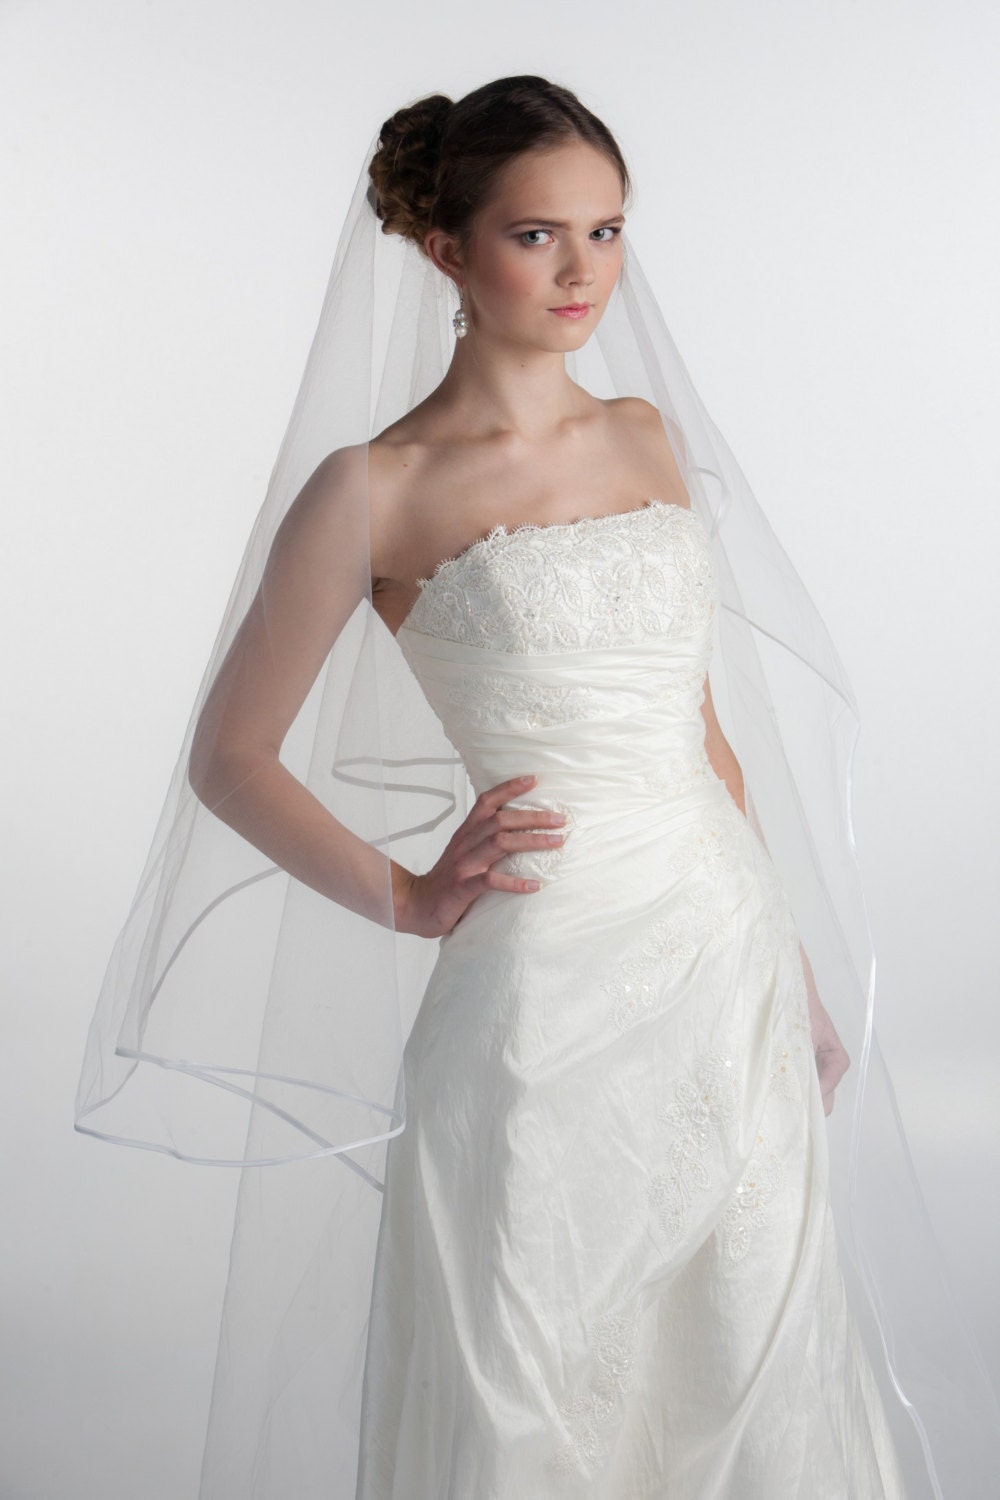 White bridal veil with satin edge, Tulle wedding veil for bride, floor length veil with blusher, wedding veil - MaijasWeddingBliss